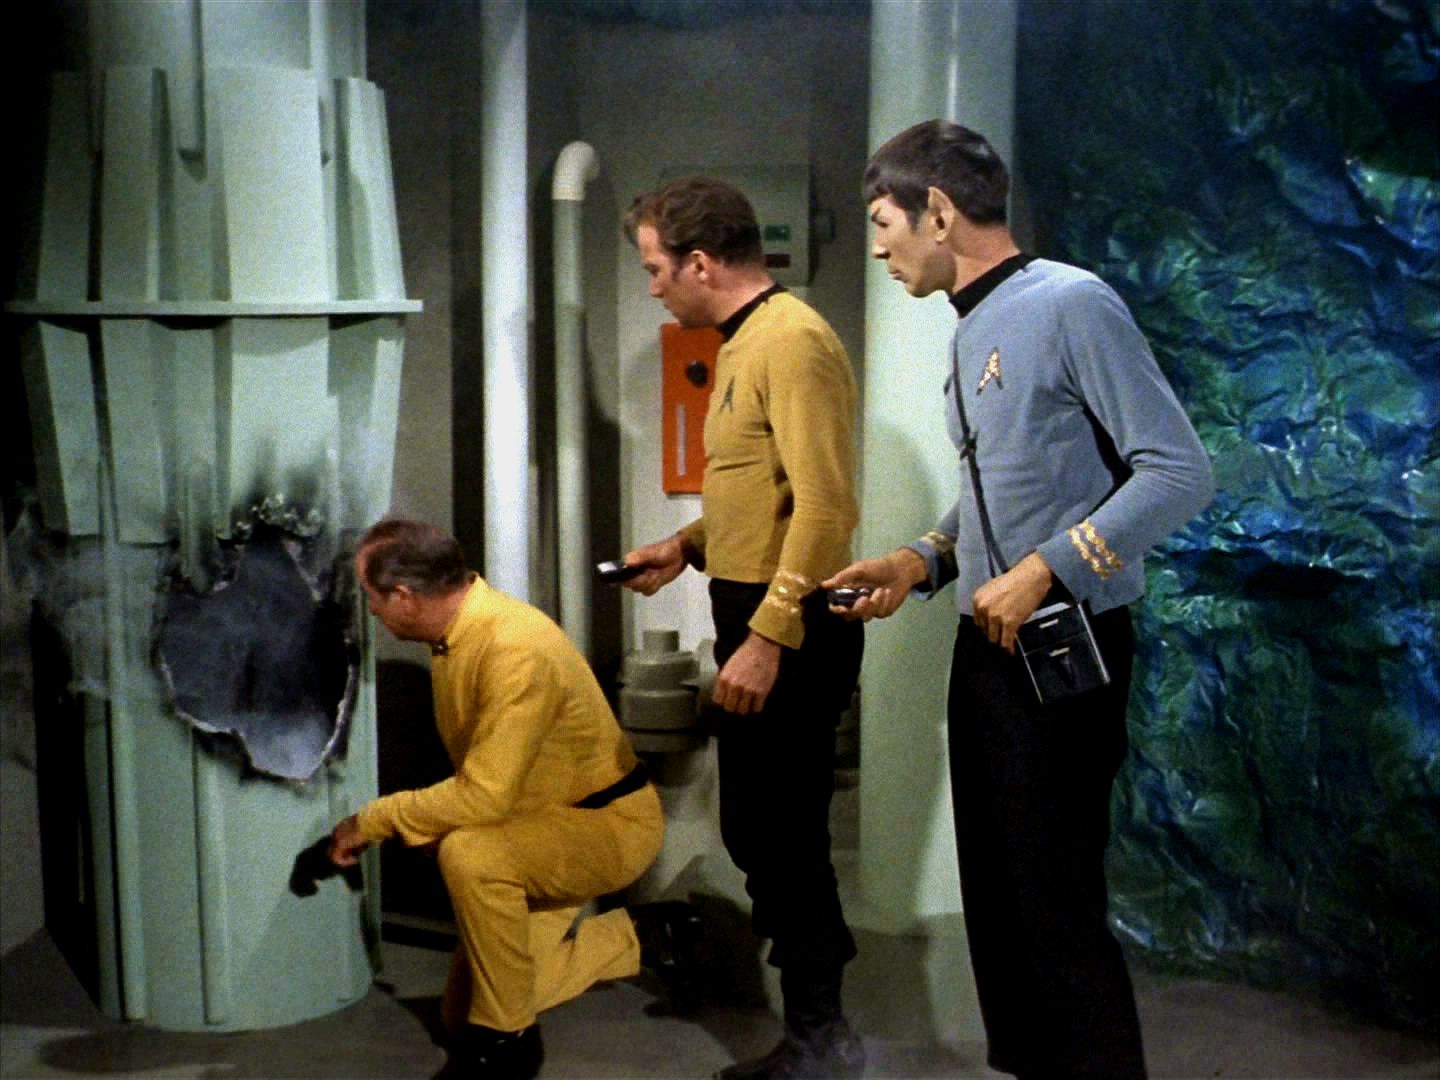 Enterprise byla vyslána na pomoc. Hned v prvních okamžicích pobytu v kolonii se stvoření dostalo k životně důležitému oběhovému čerpadlu reaktoru a ukradlo je.